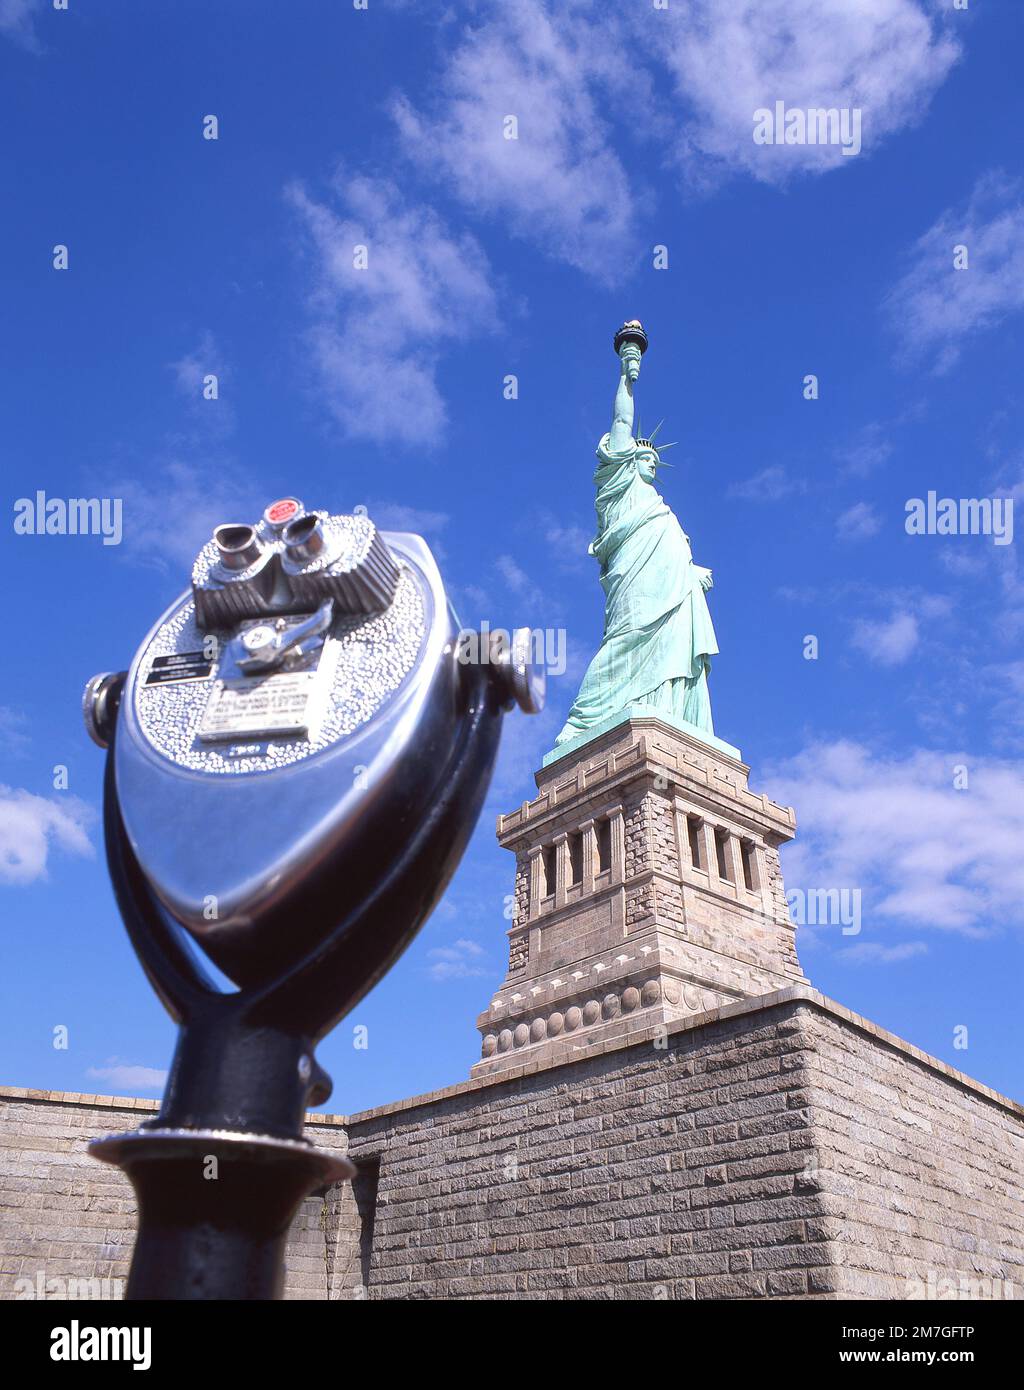 Münzfernbedientes Fernglas und Statue of Liberty National Monument, Liberty Island, New York, New York State, Vereinigte Staaten von Amerika Stockfoto